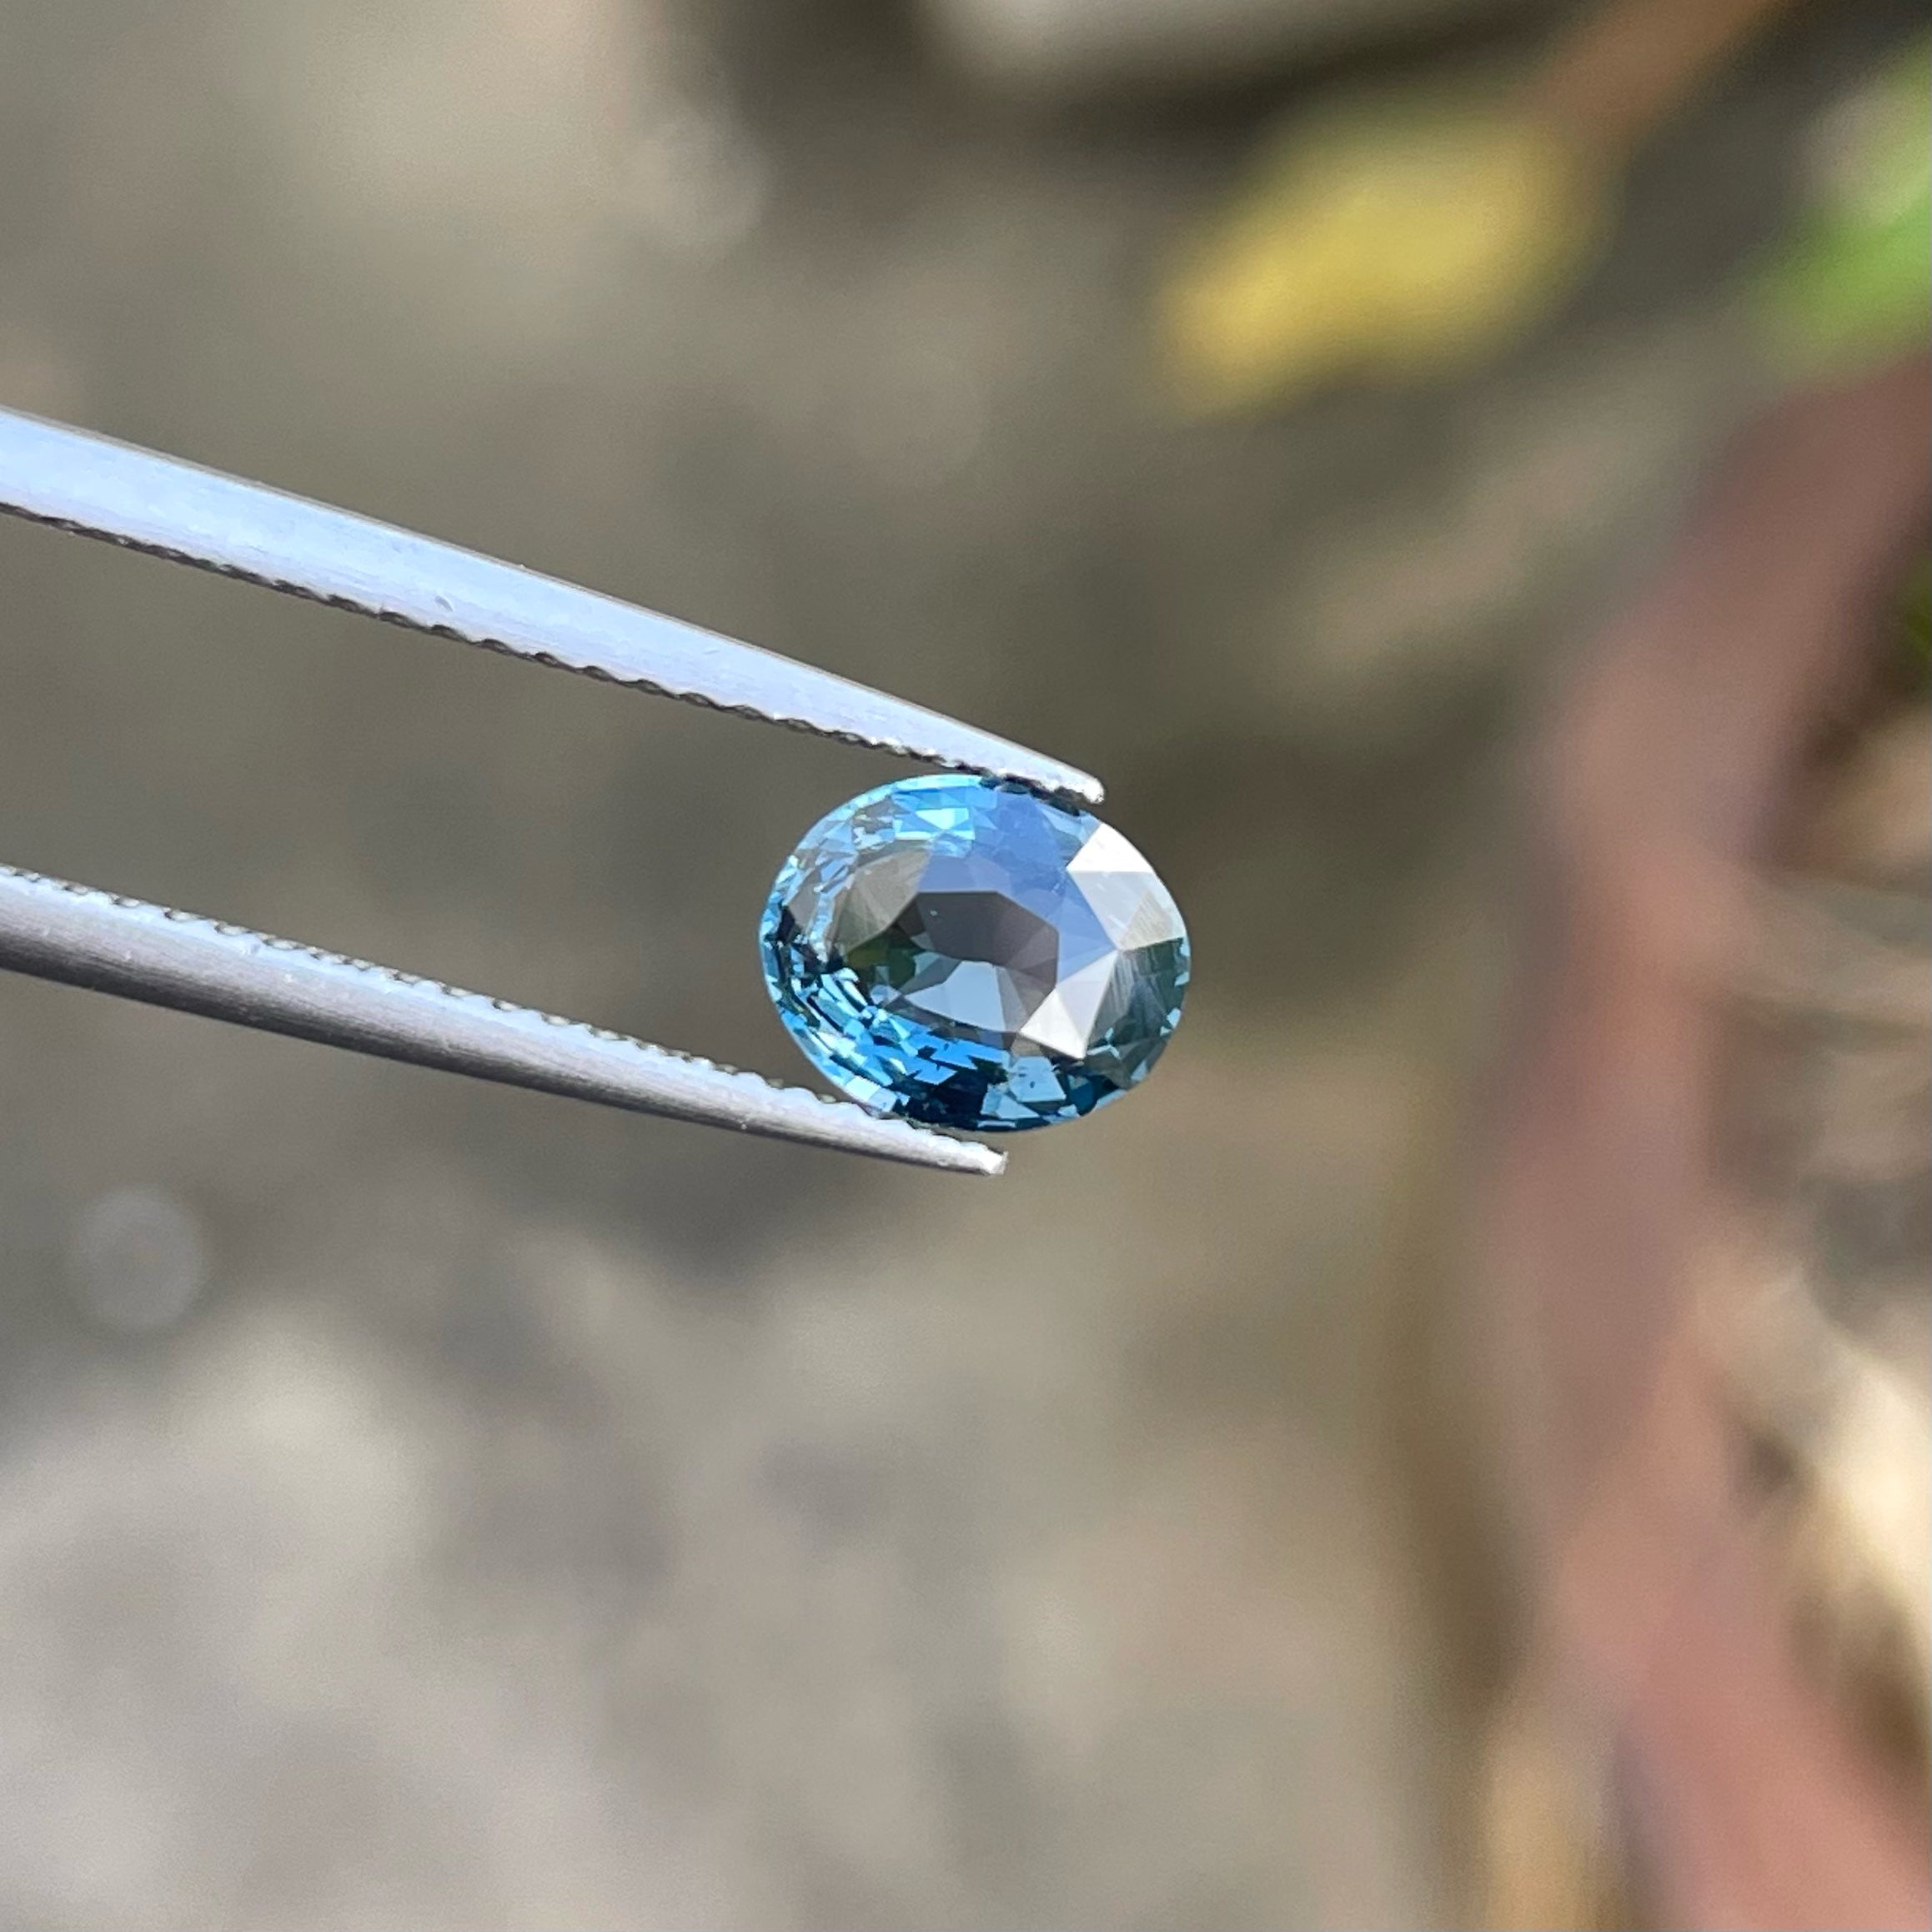 Fantastic Cobalt Blue Spinel Gemstone